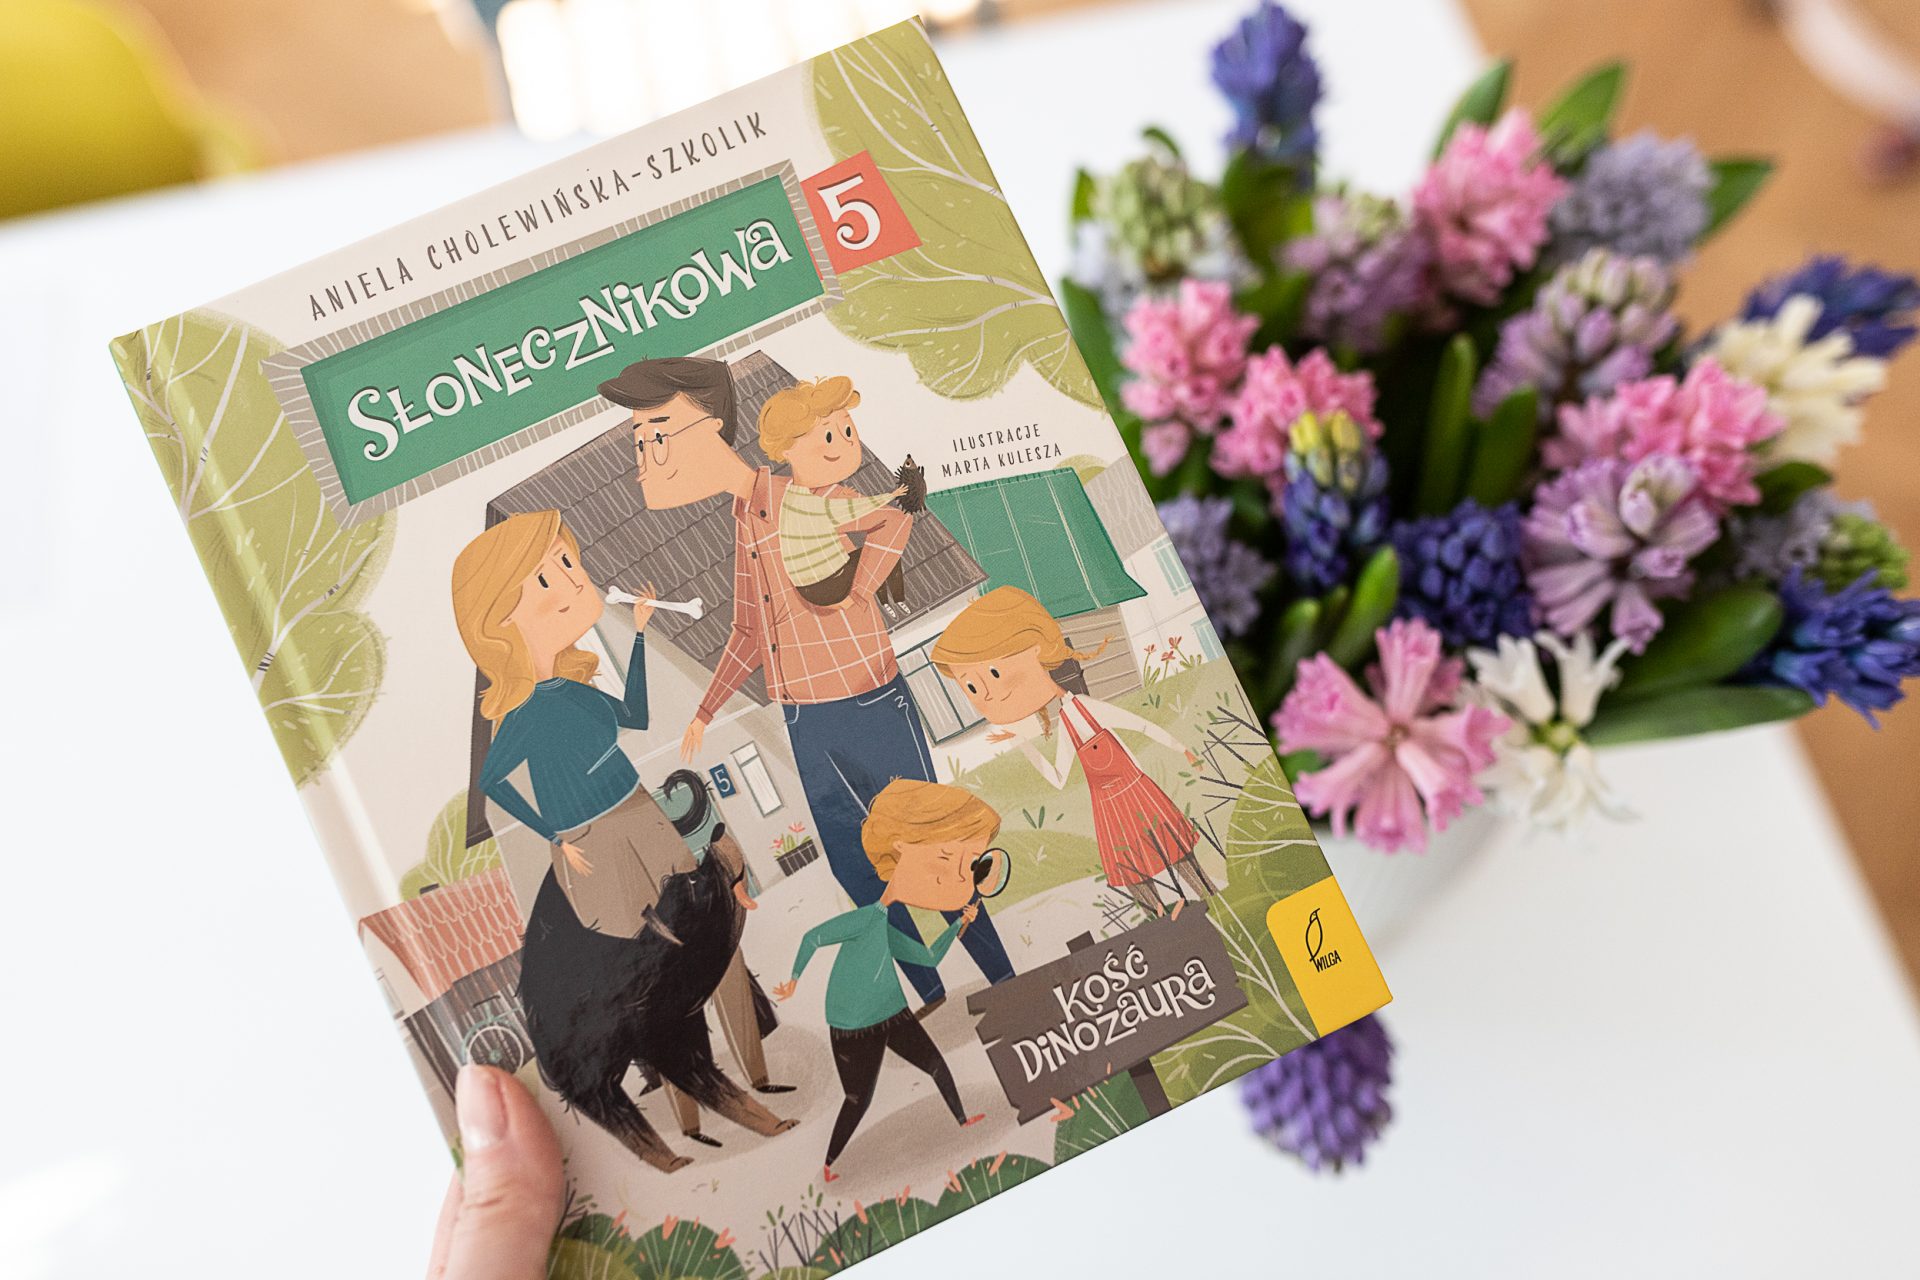 Słonecznikowa 5 seria książek dla dzieci których autorką jest Aniela Cholewińską-Szkolik